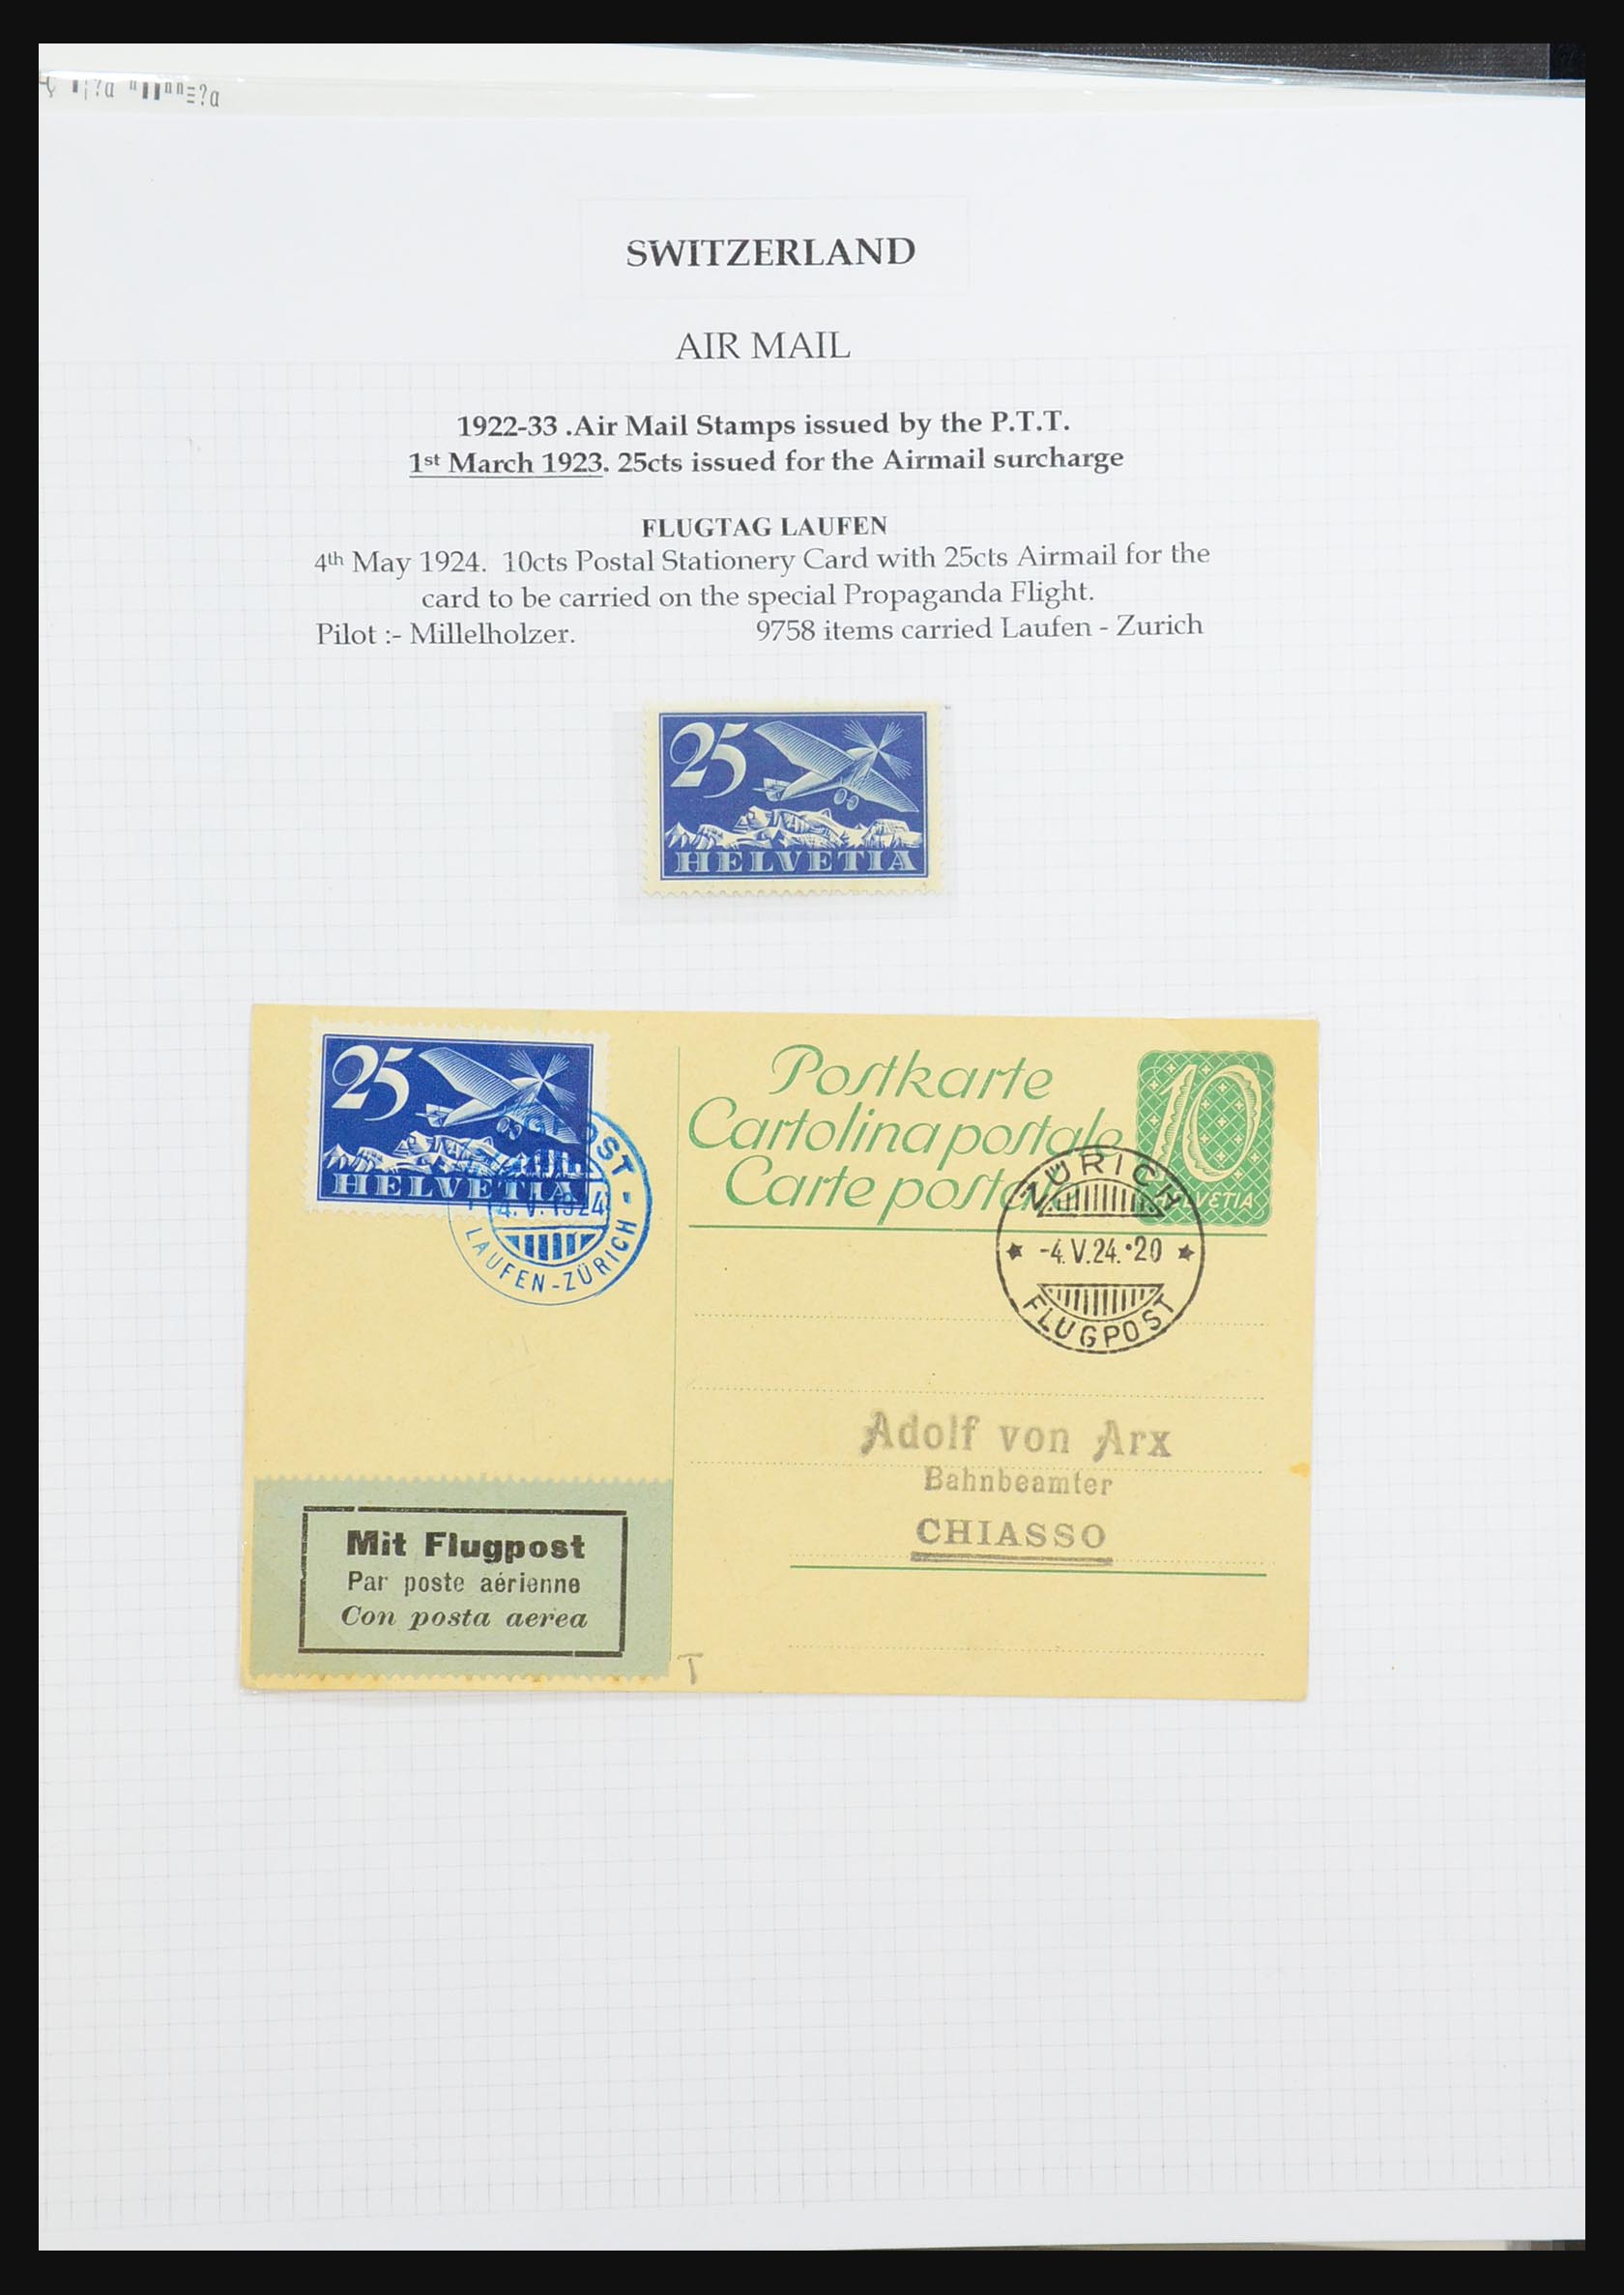 31444 007 - 31444 Zwitserland luchtpost brieven 1922-1946.